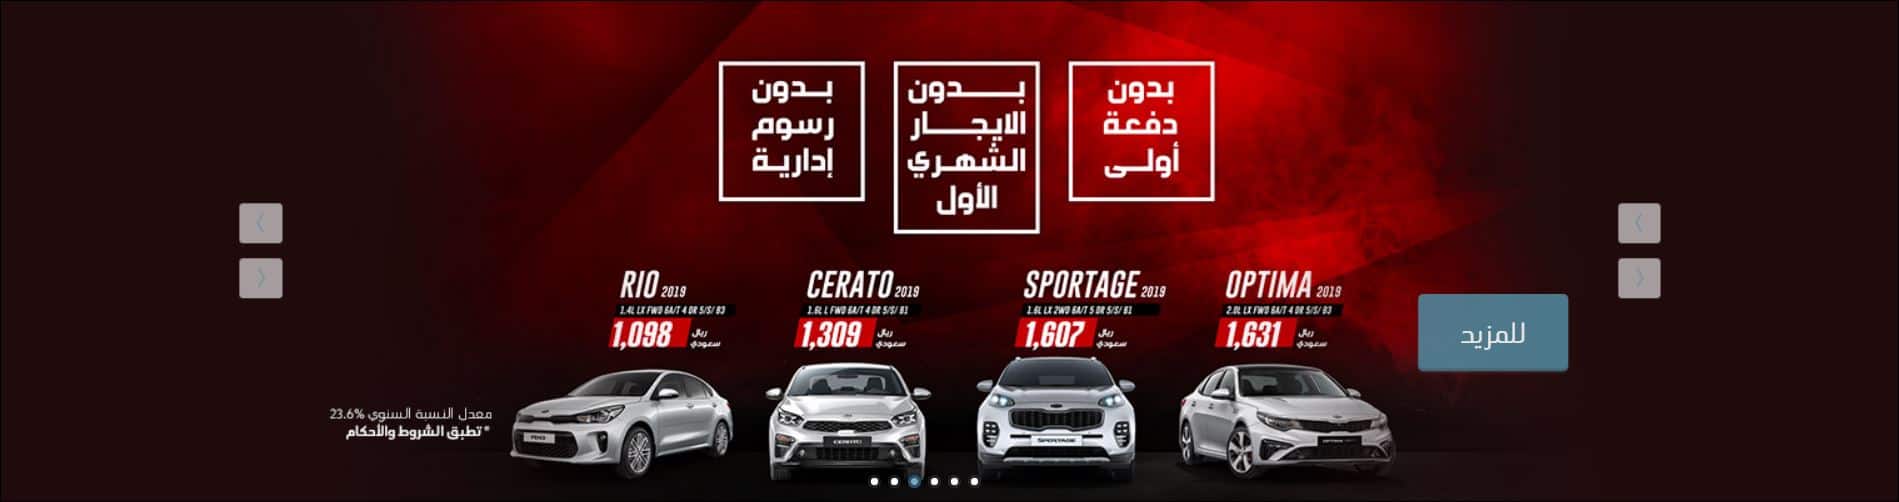 عروض السيارات في السعودية بالتقسيط من عبداللطيف الجميل سياررات ريو وسيراتو واوبتيما وسبورتاج